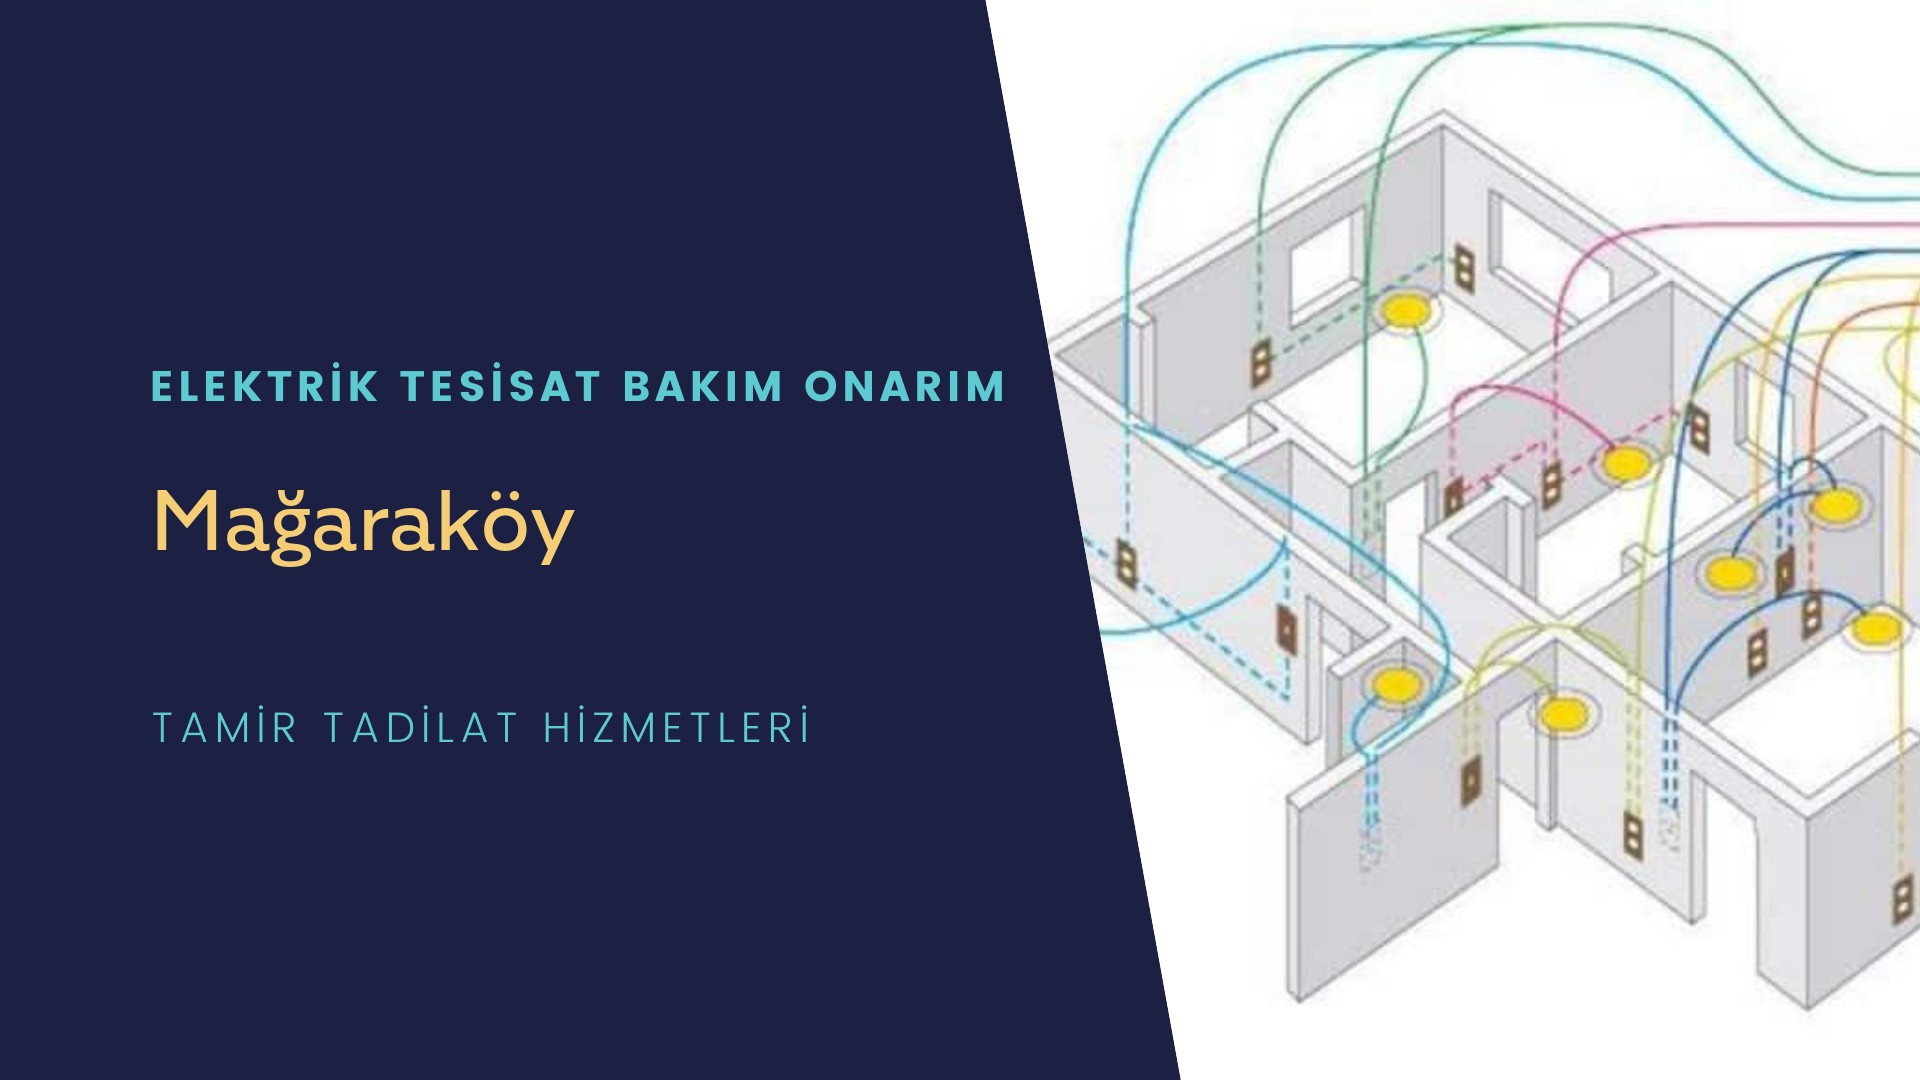 Mağaraköy'de elektrik tesisatı ustalarımı arıyorsunuz doğru adrestenizi Mağaraköy elektrik tesisatı ustalarımız 7/24 sizlere hizmet vermekten mutluluk duyar.